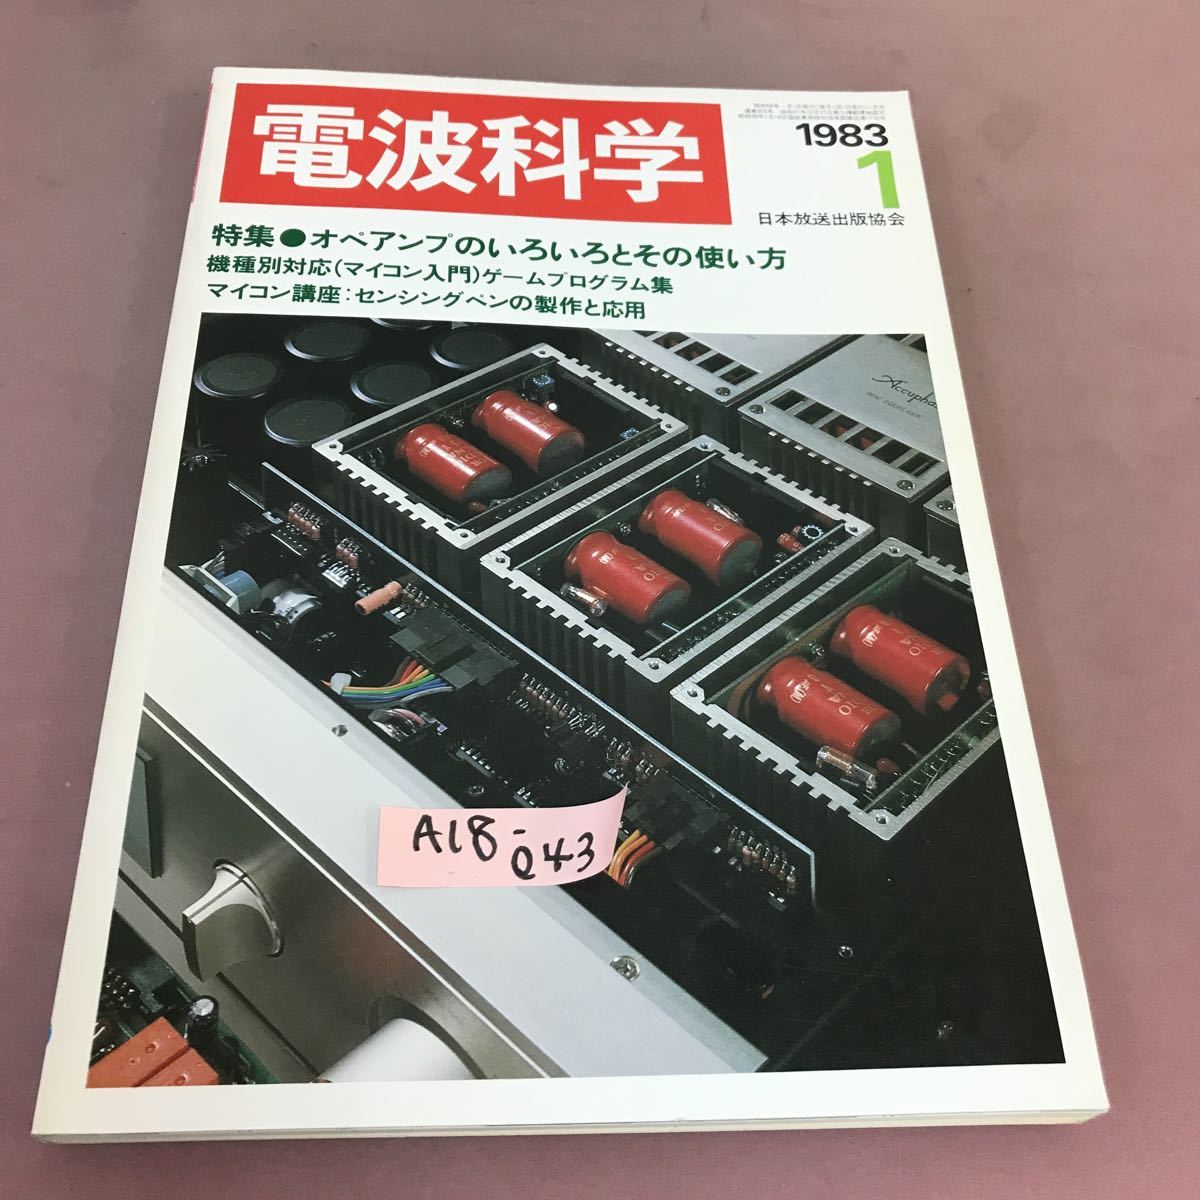 A18-043 電波科学 1983.1 オペアンプのいろいろとその使い方 日本放送出版協会